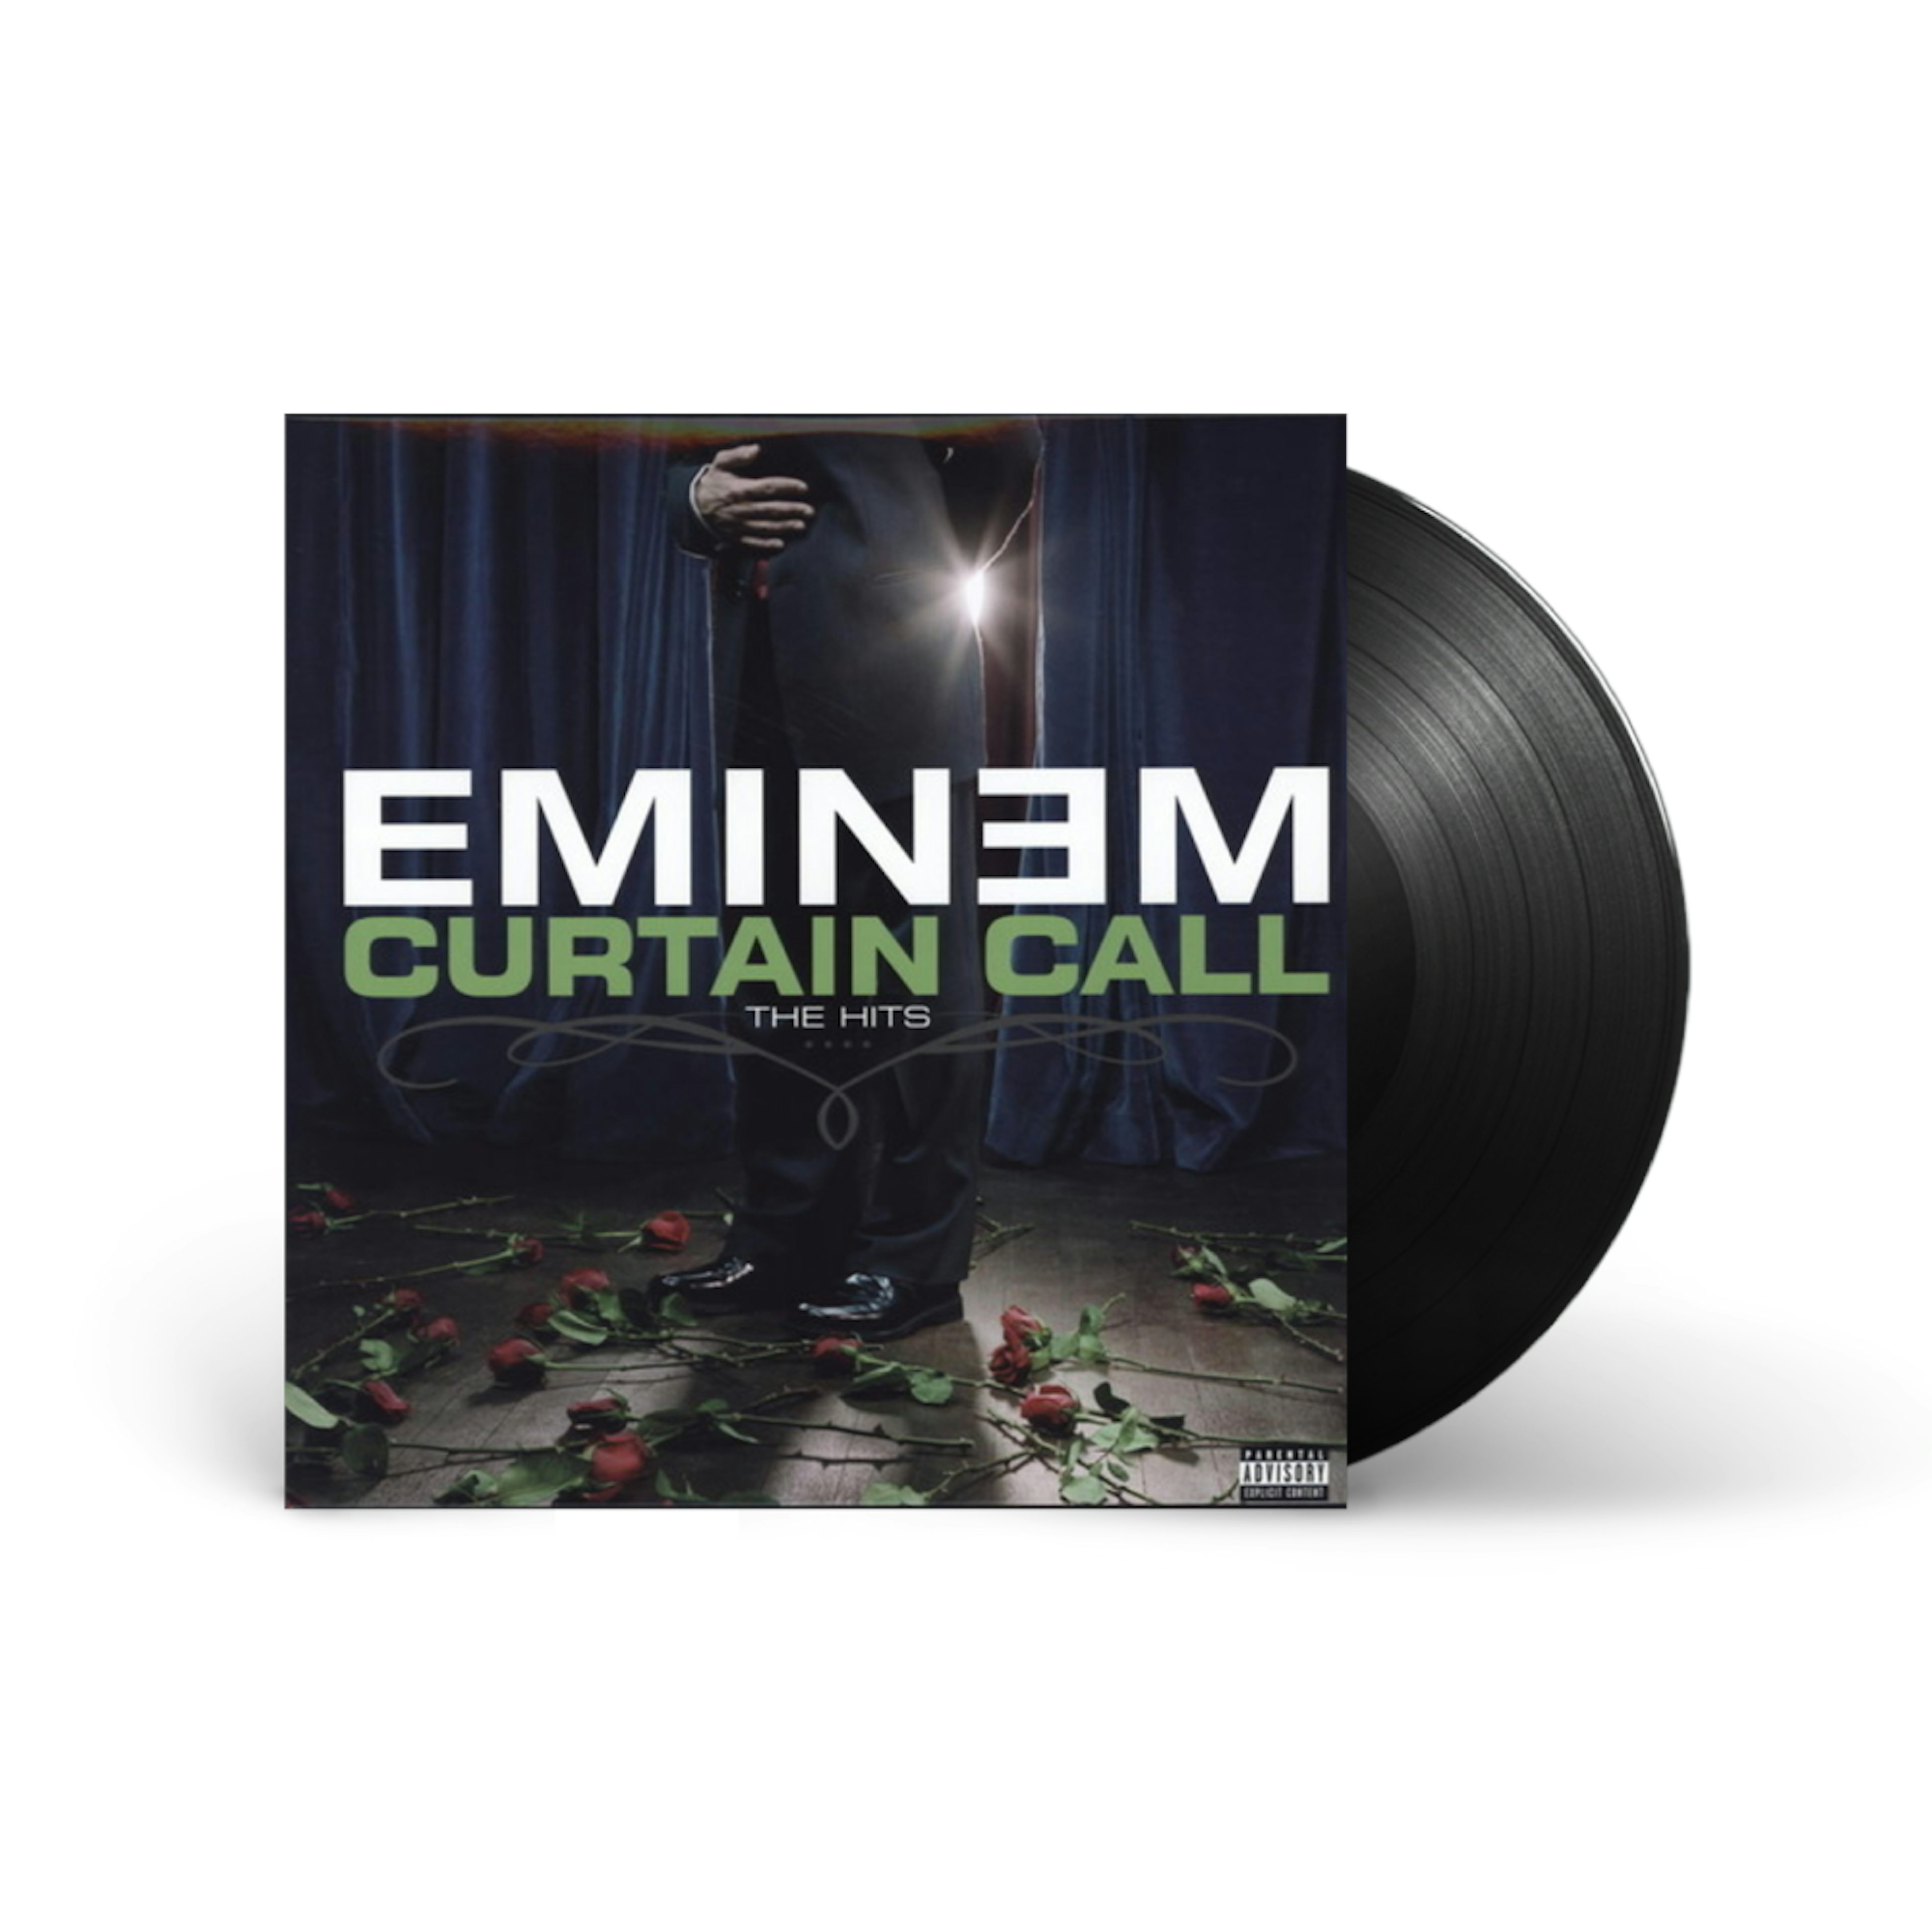 Eminem curtain call. Curtain Call 2 Эминем. Curtain Call: the Hits Эминем. Eminem Curtain Call the Hits обложка. Eminem Curtain Call the Hits винил.